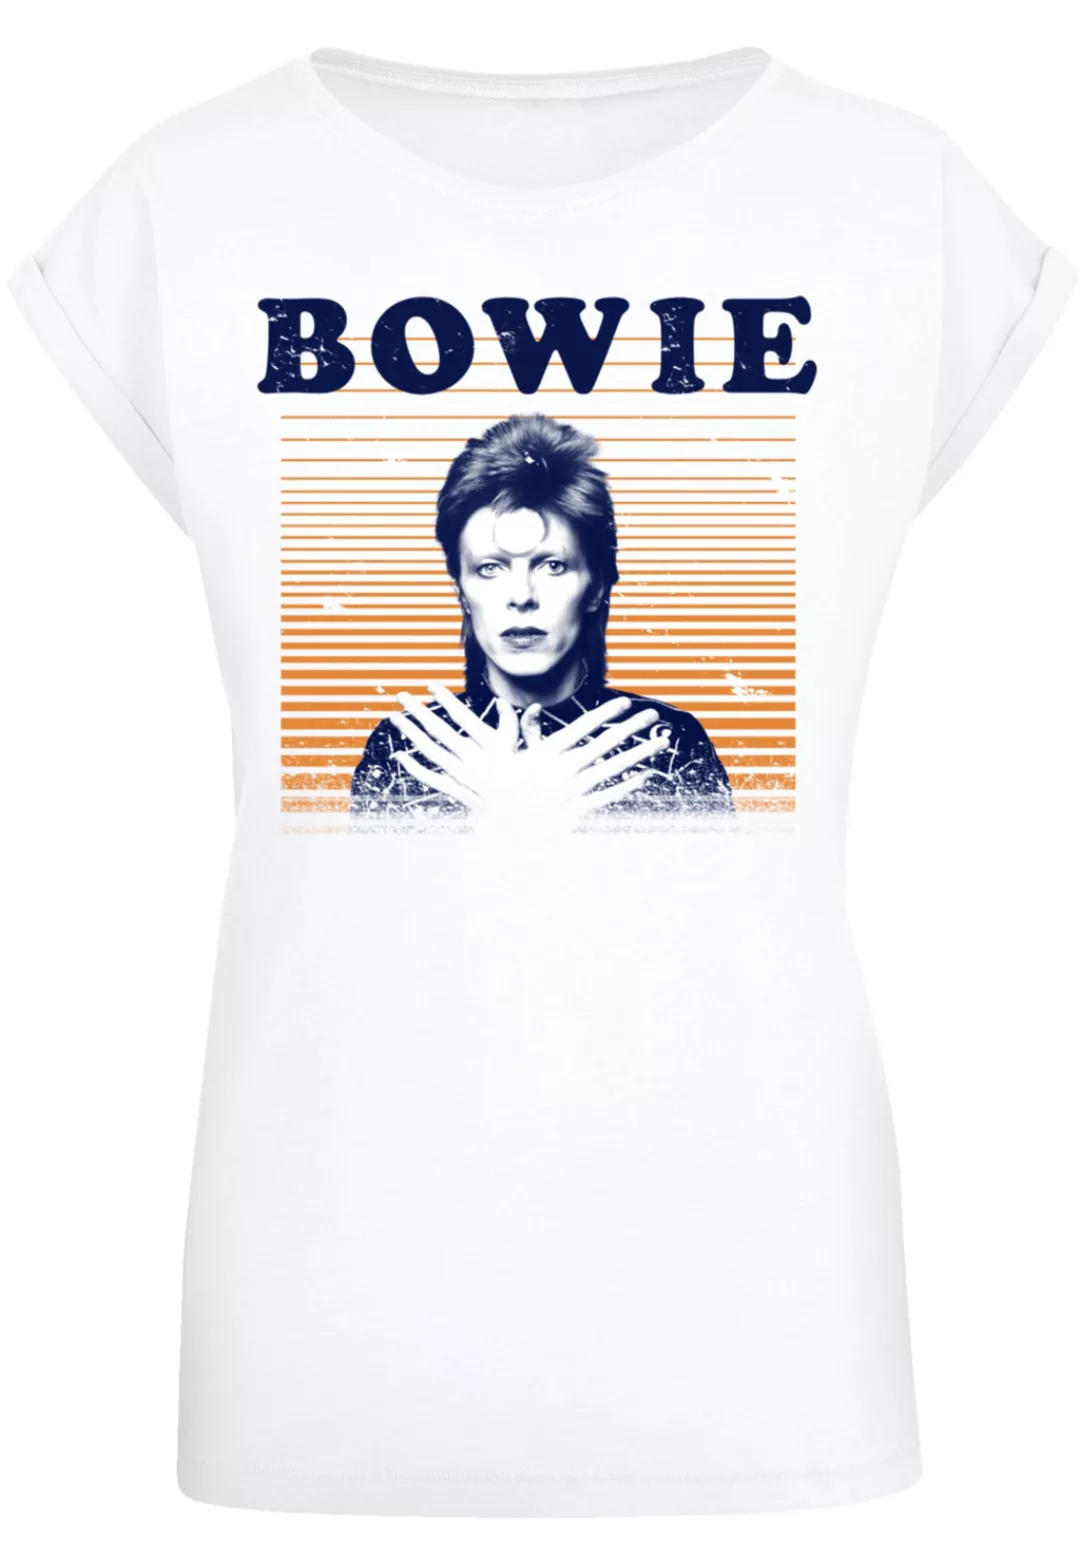 F4NT4STIC T-Shirt "David Bowie Black Tie White Noise" günstig online kaufen